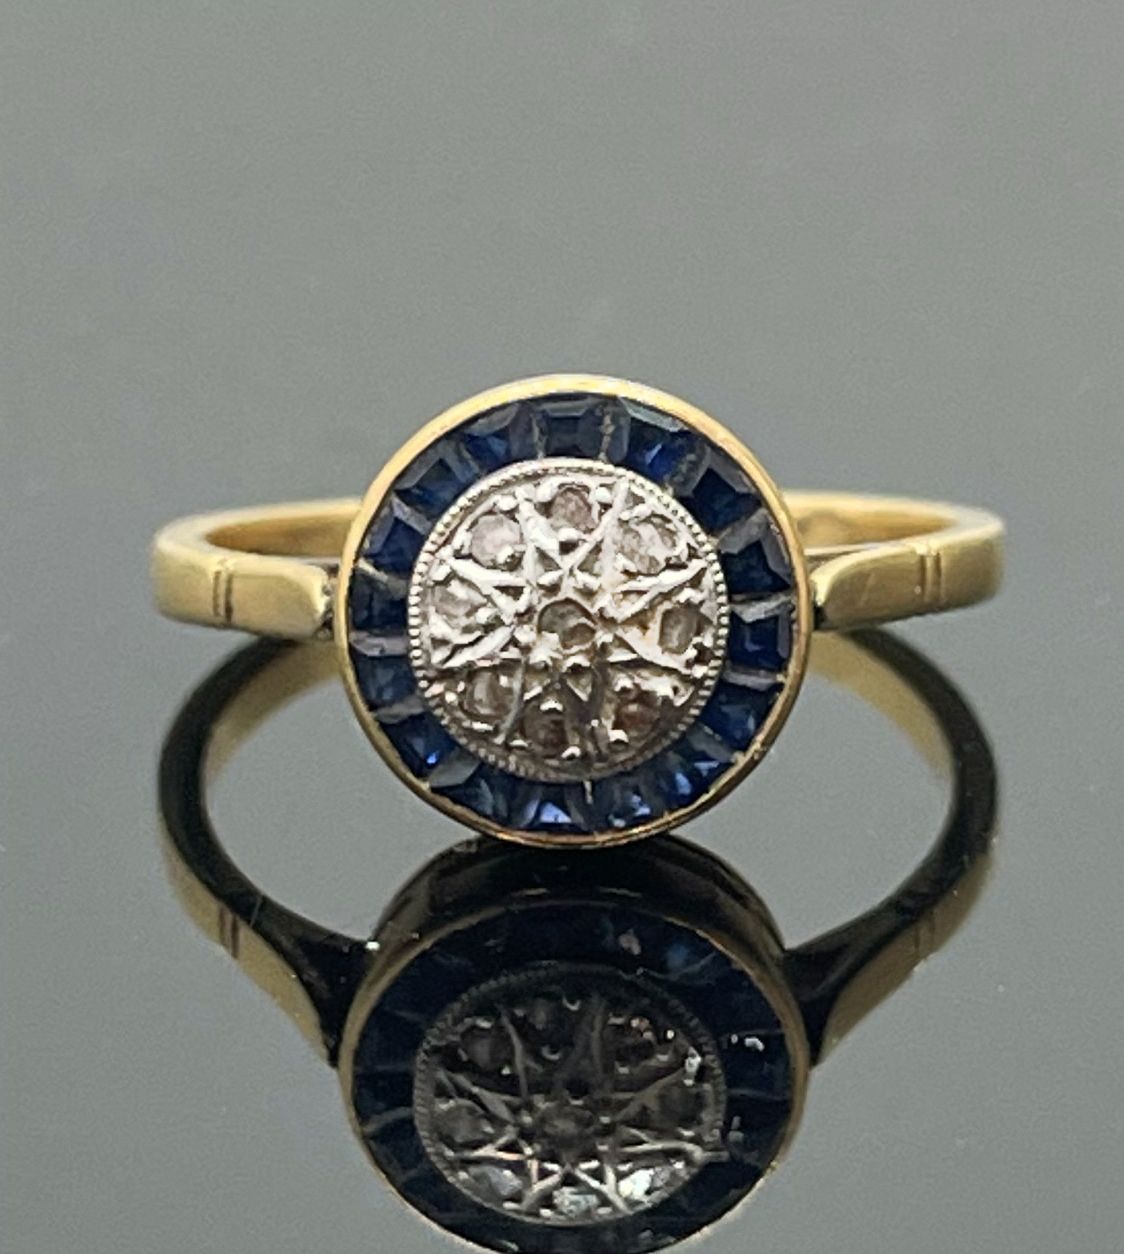 Null 黄金戒指，白金背景的圆形表圈上镶嵌着钻石，周围是校准的蓝宝石。TDD 52。重量2,62克